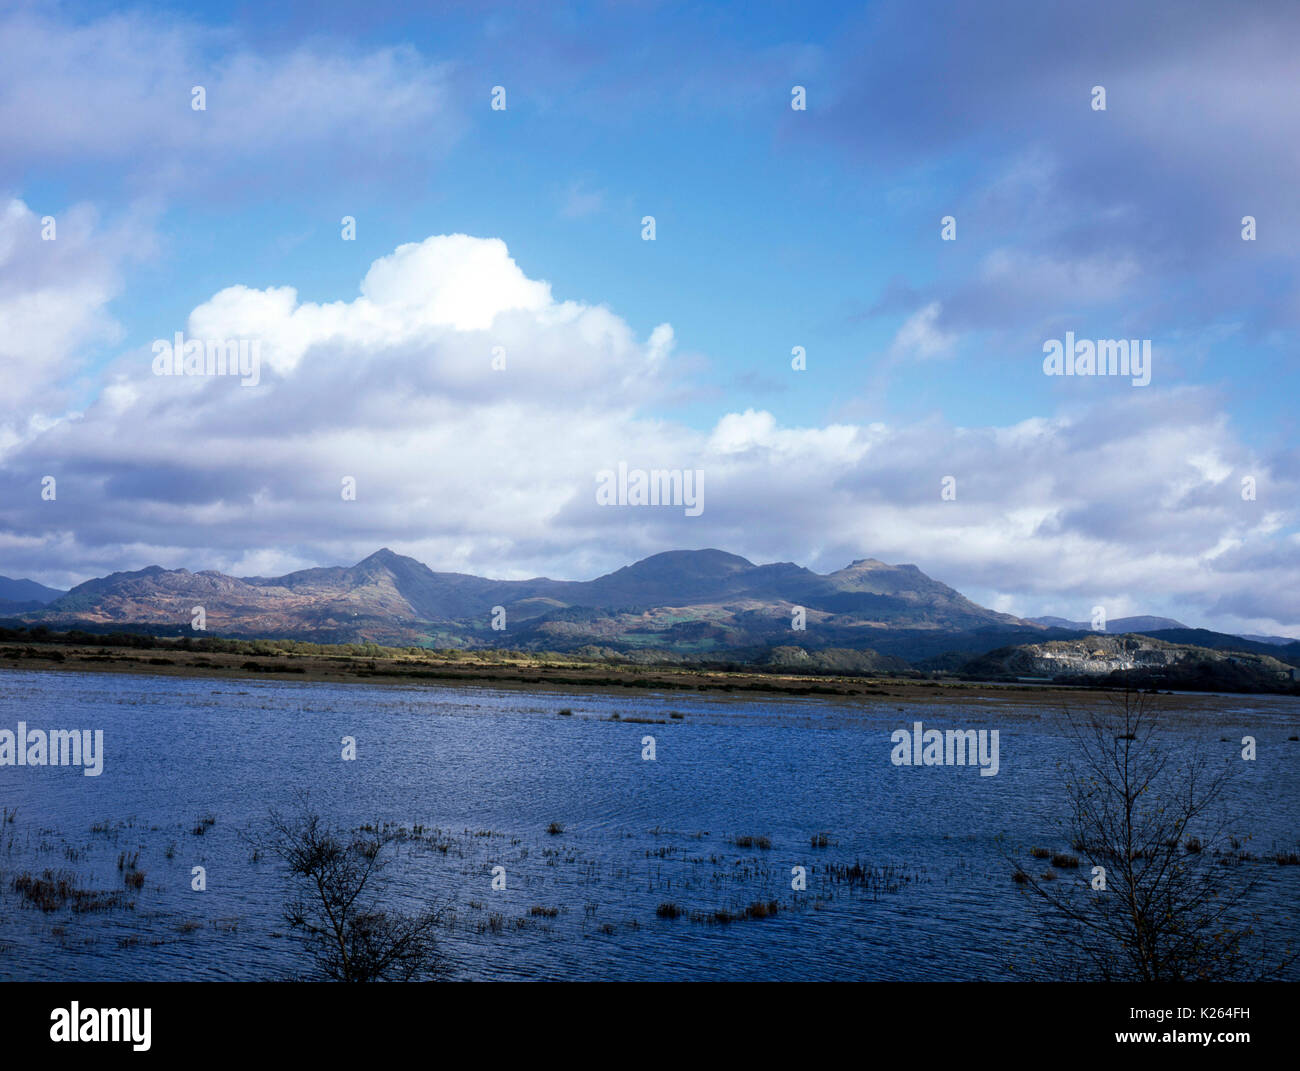 Moelwyn-Berge und Blick über die überfluteten Mündung des The Afon Glaslyn vom Maiskolben an Porthmadog Snowdonia Wales Cnicht Stockfoto